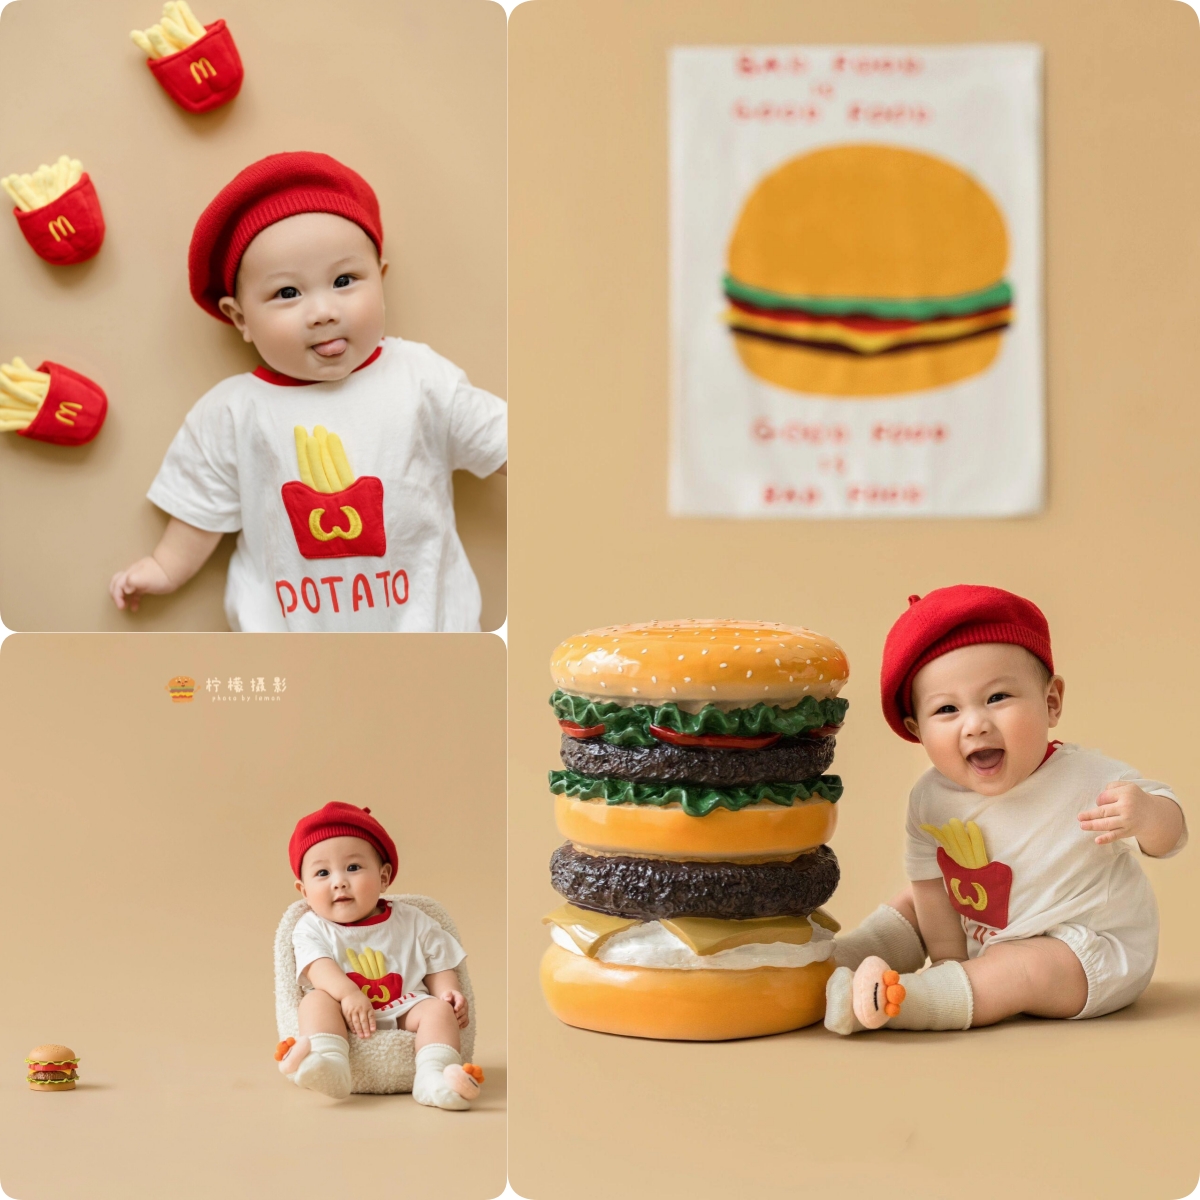 儿童摄影主题服装汉堡薯条道具创意宝宝照百天照周岁照拍照服装